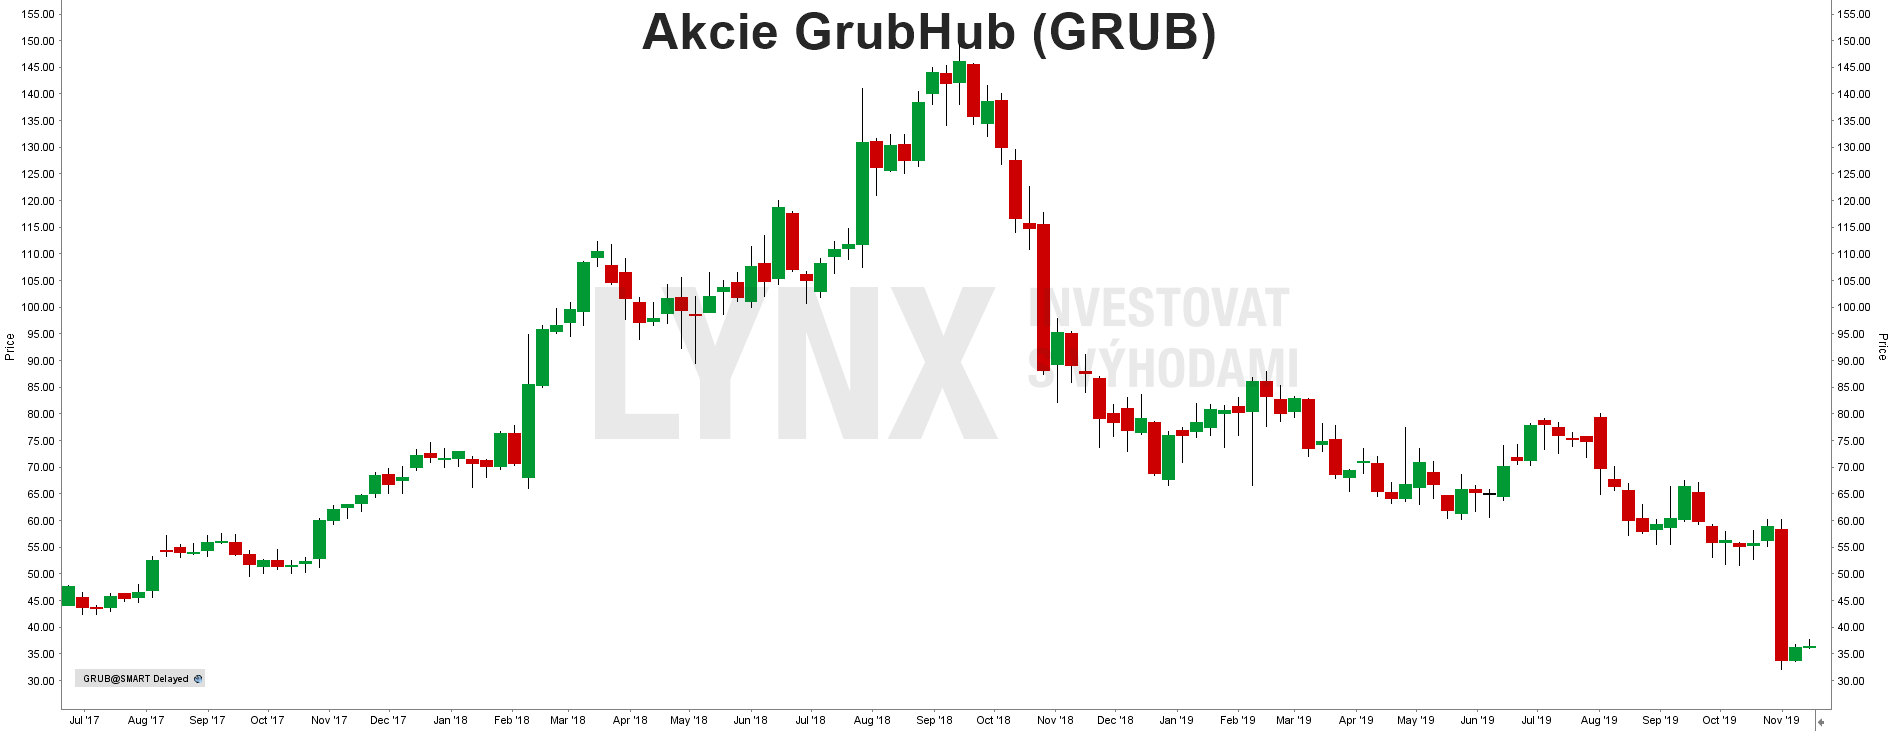 Akcie GrubHub - graf